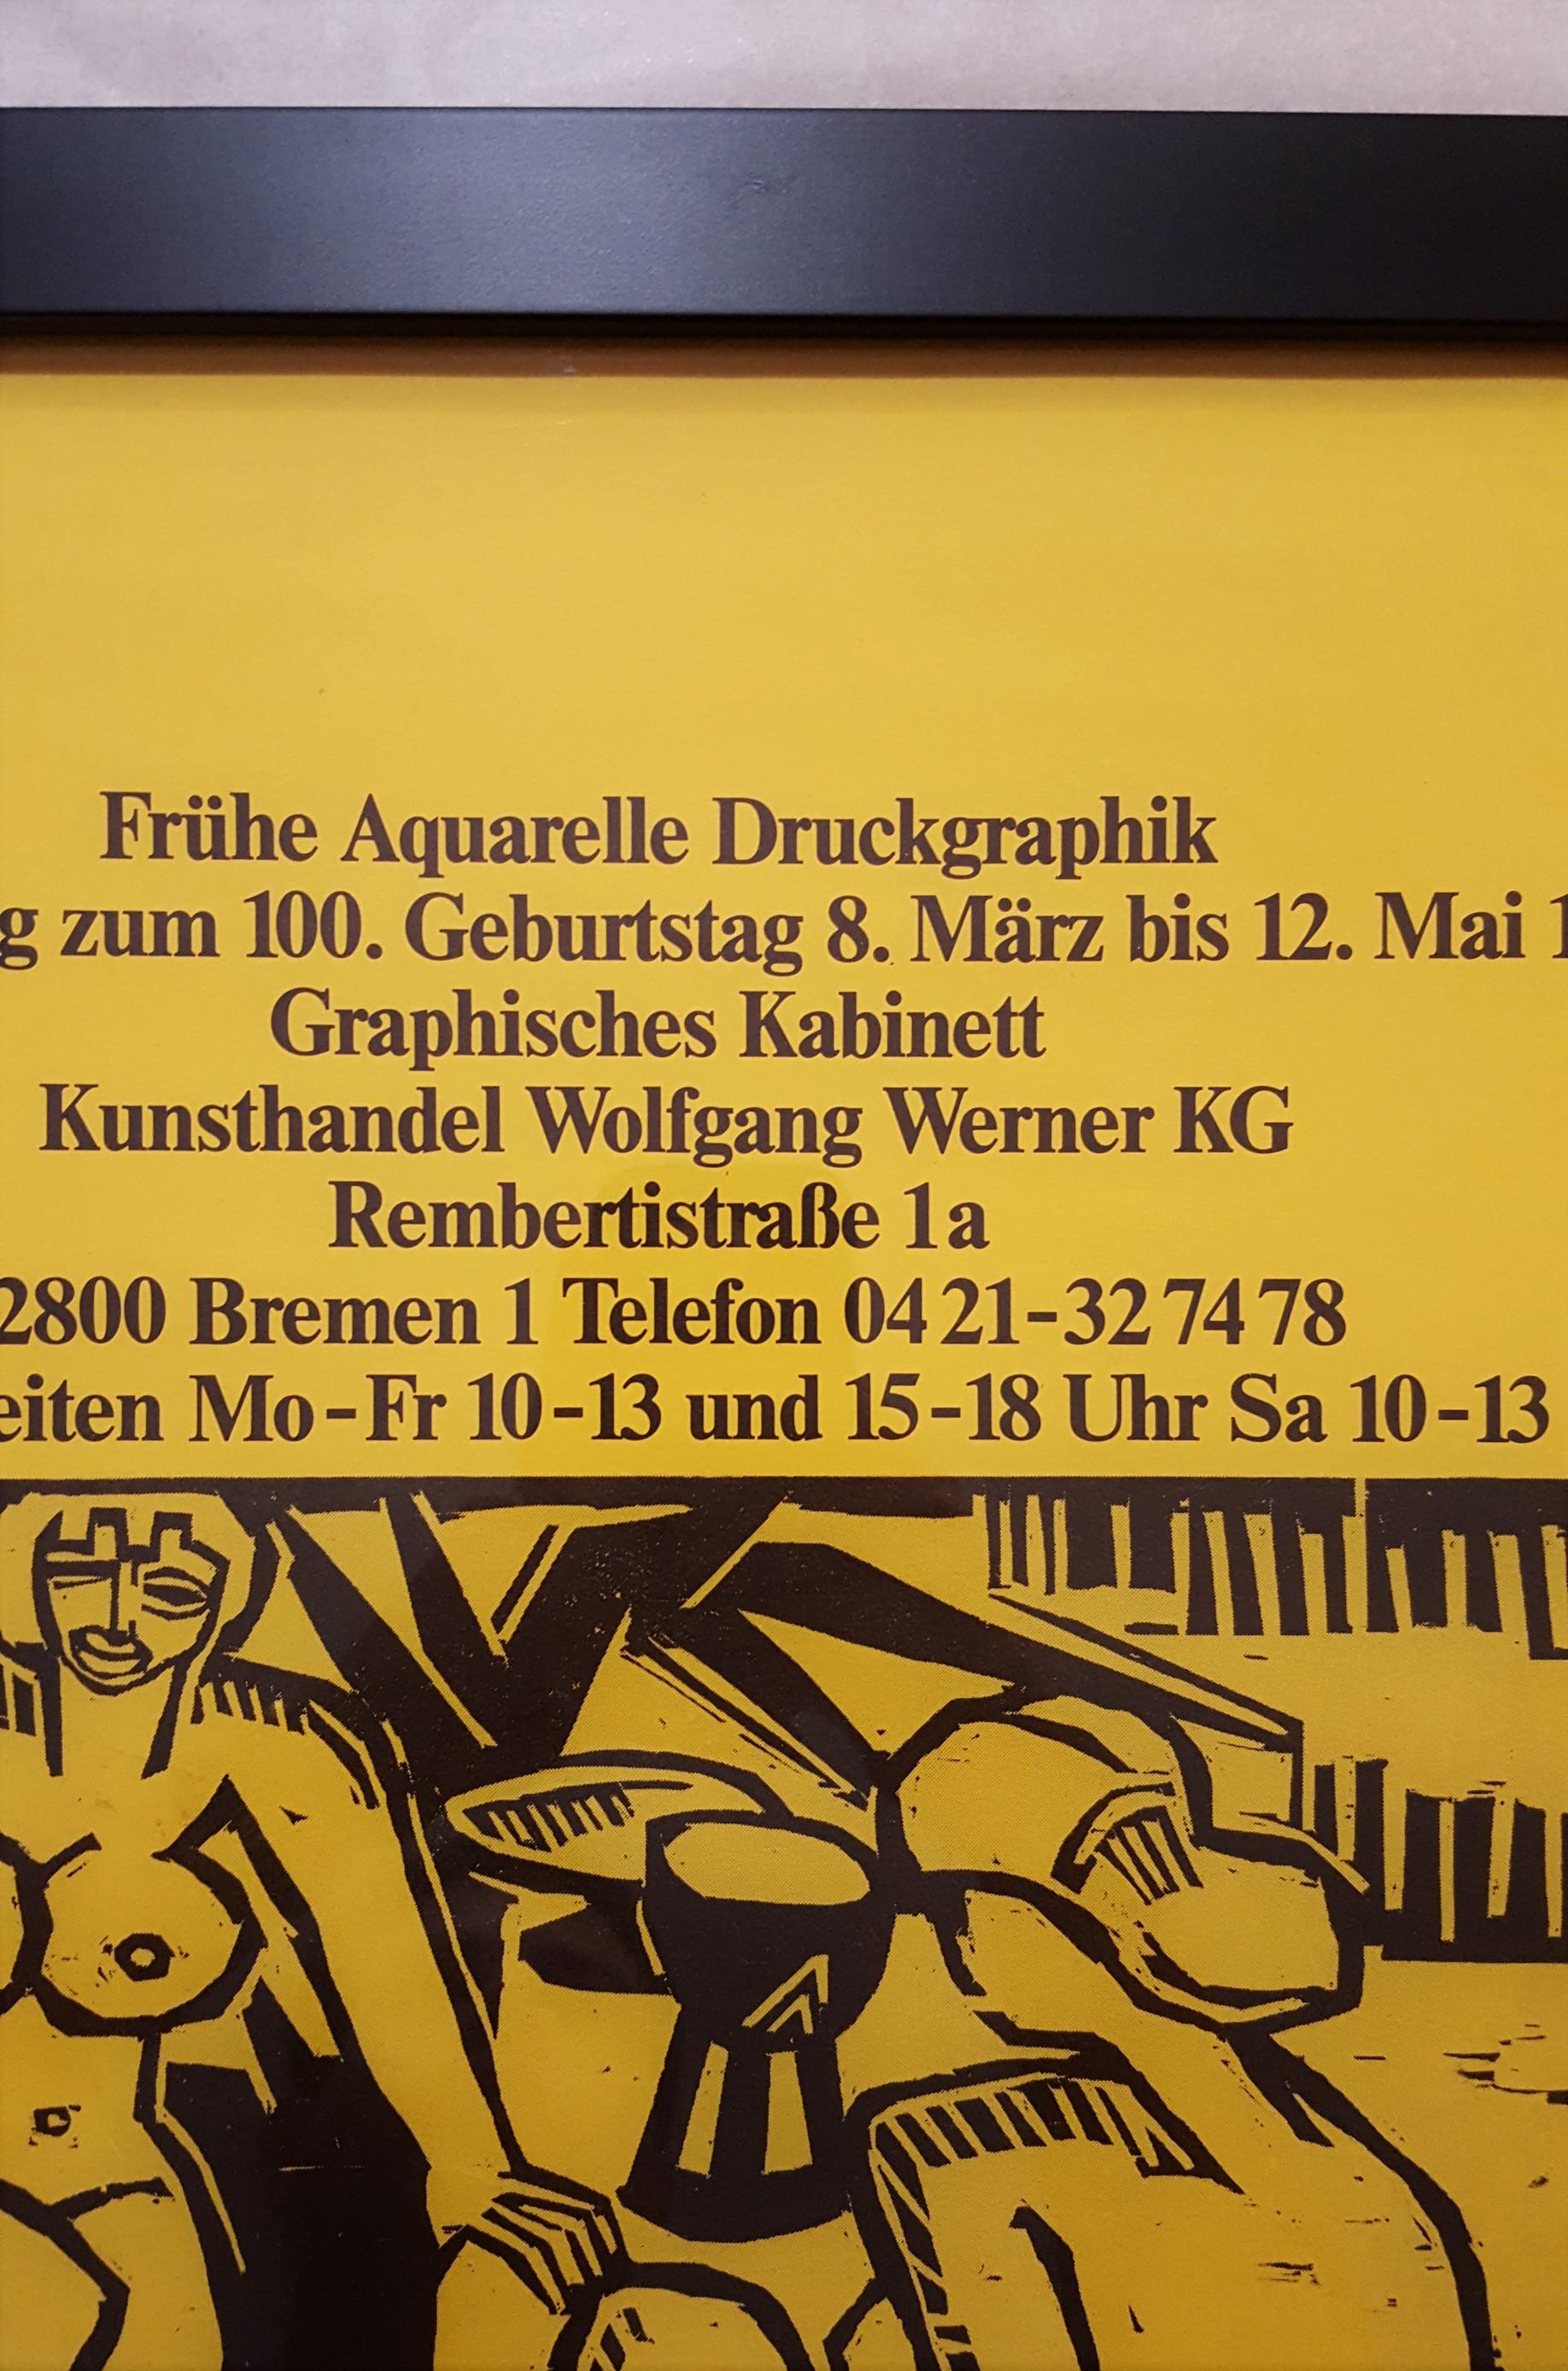 Kunsthandel Wolfgang Werner KG (Nudes) For Sale 1